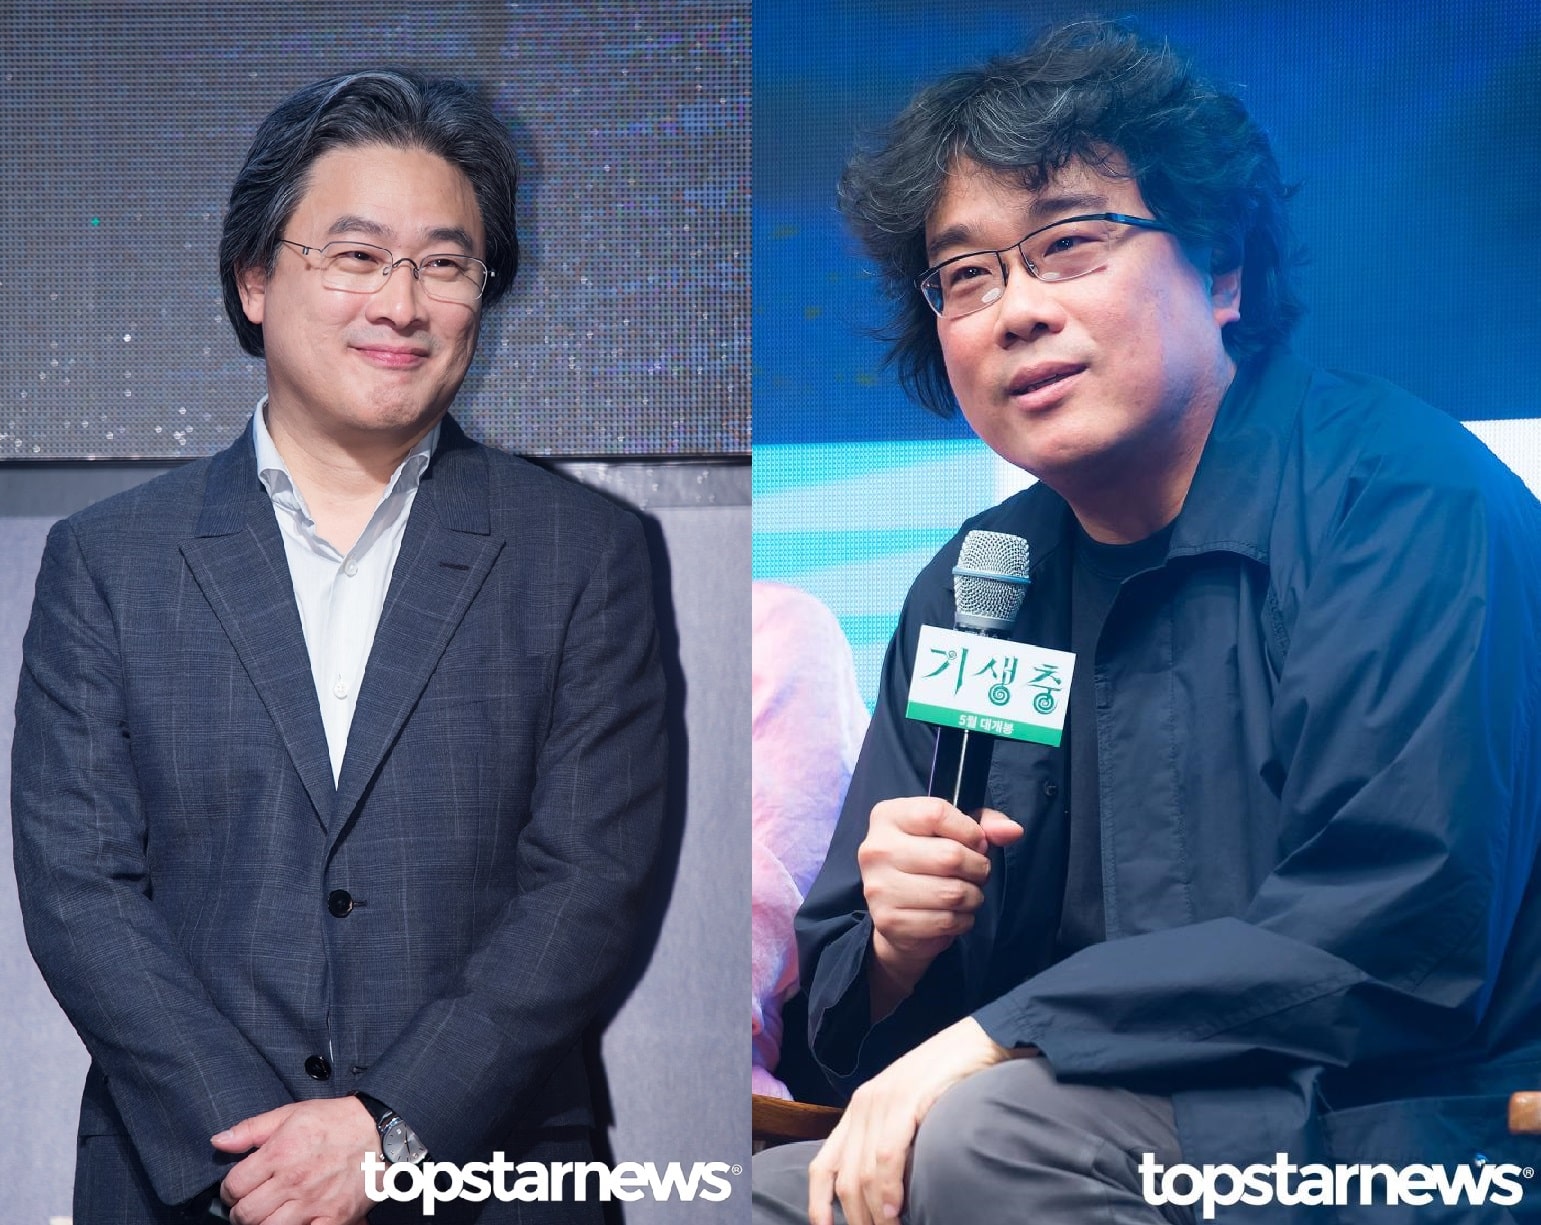 パク・チャヌク監督とポン・ジュノ監督は、韓国が誇る映画監督